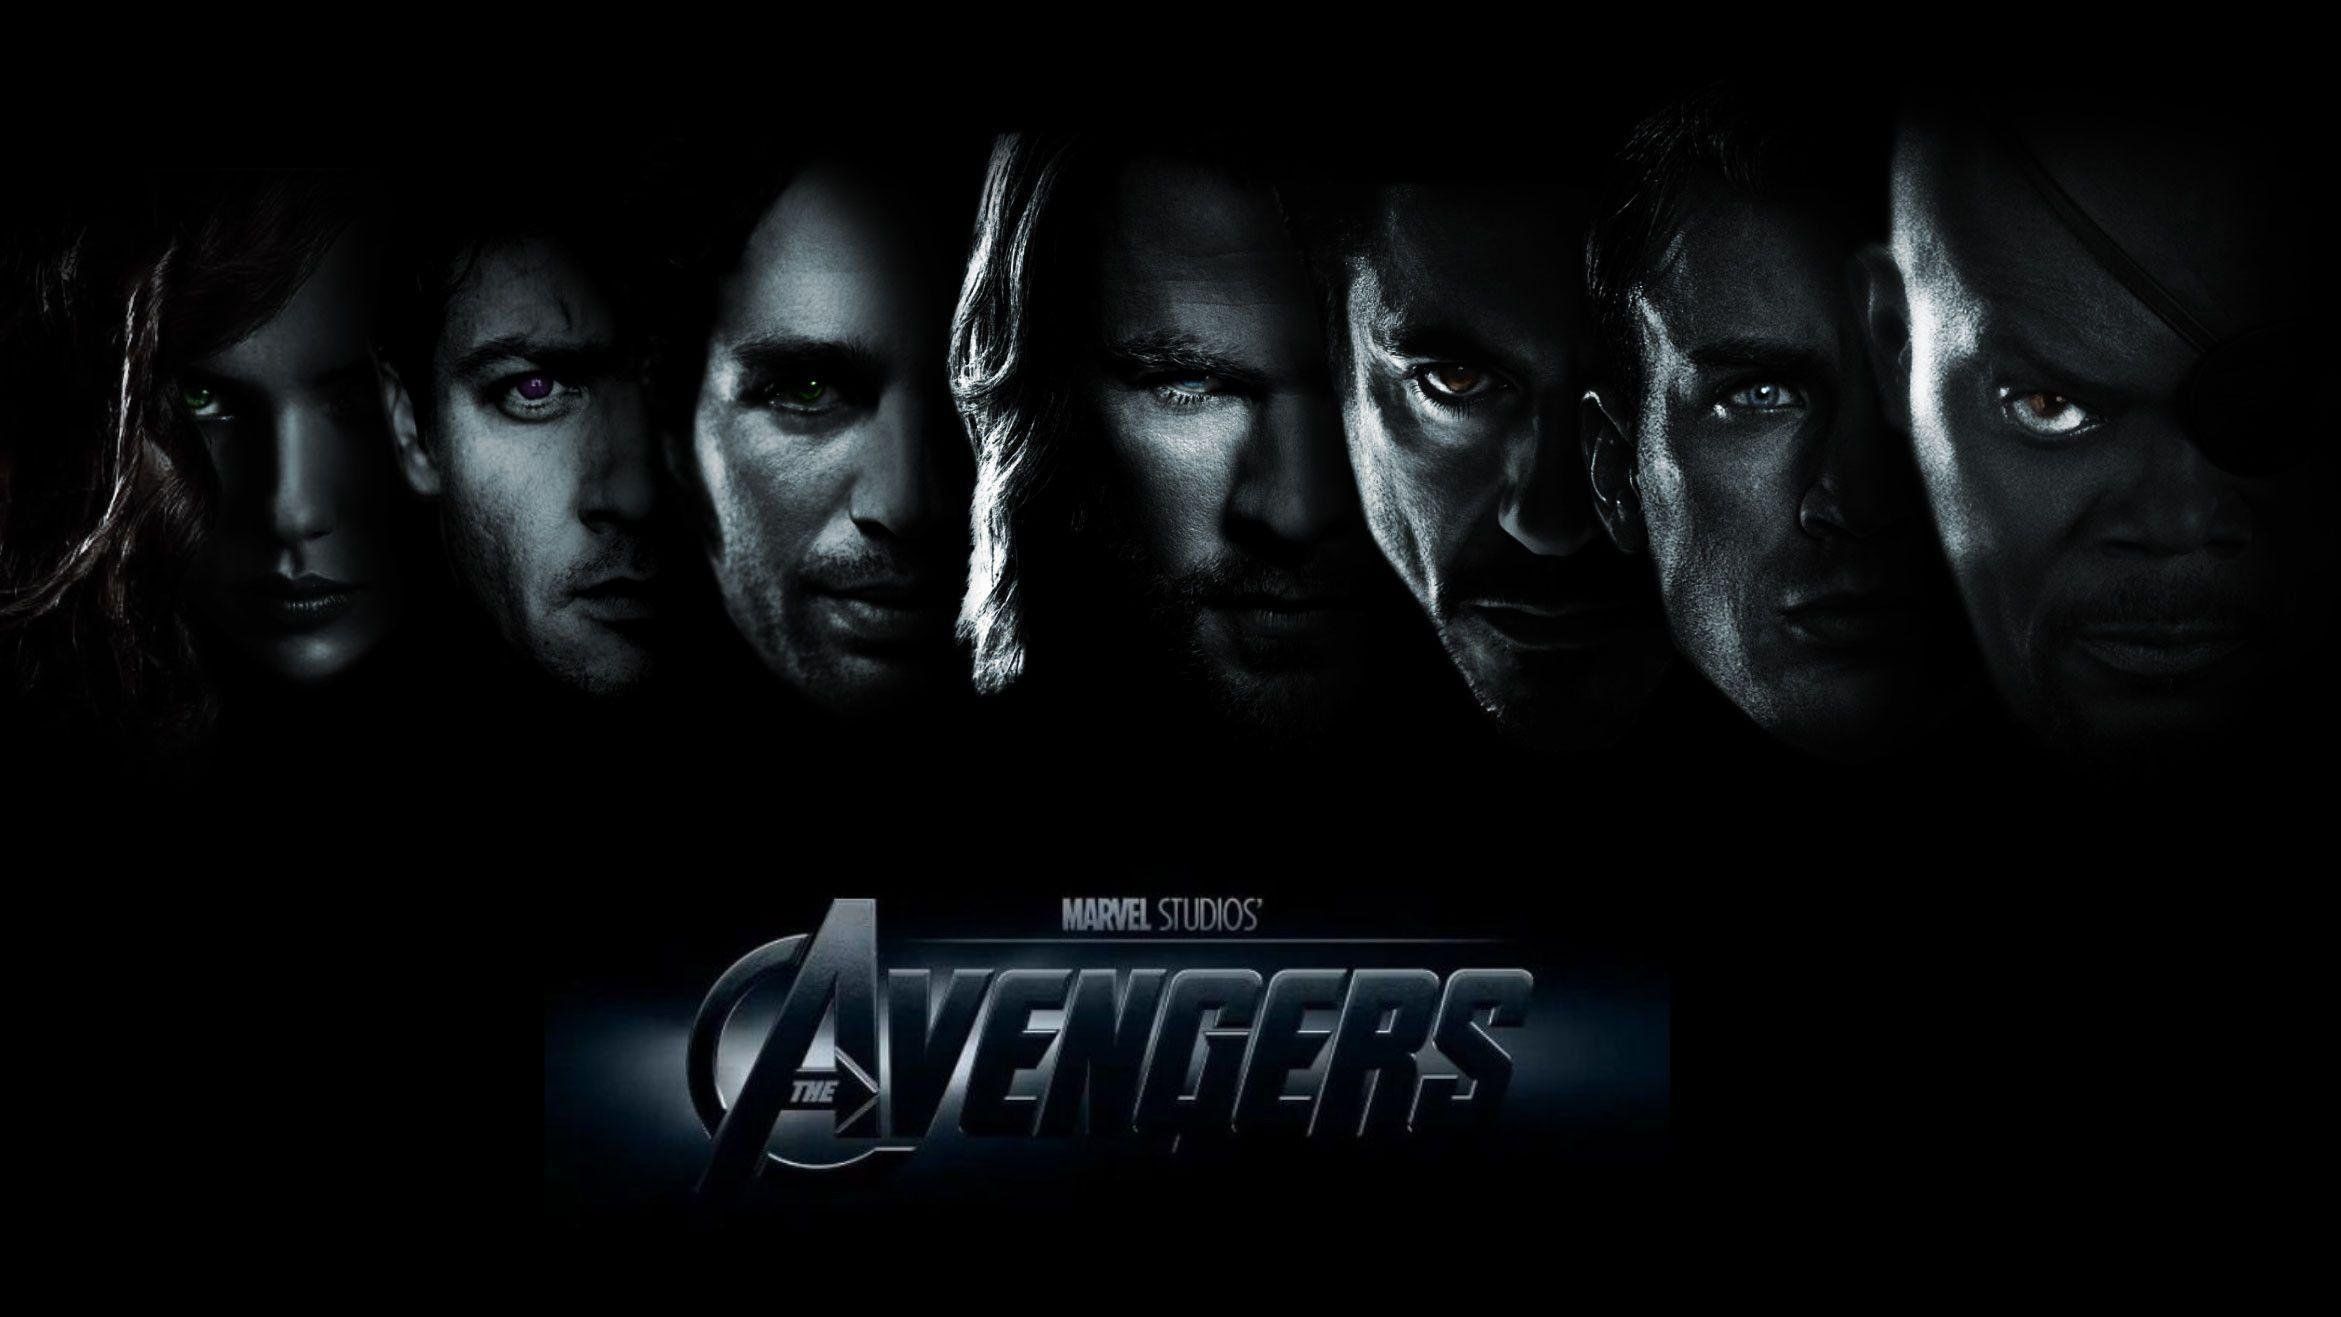 Marvel Avengers Logo Wallpapers 4k Hd Marvel Avengers Logo Backgrounds On Wallpaperbat